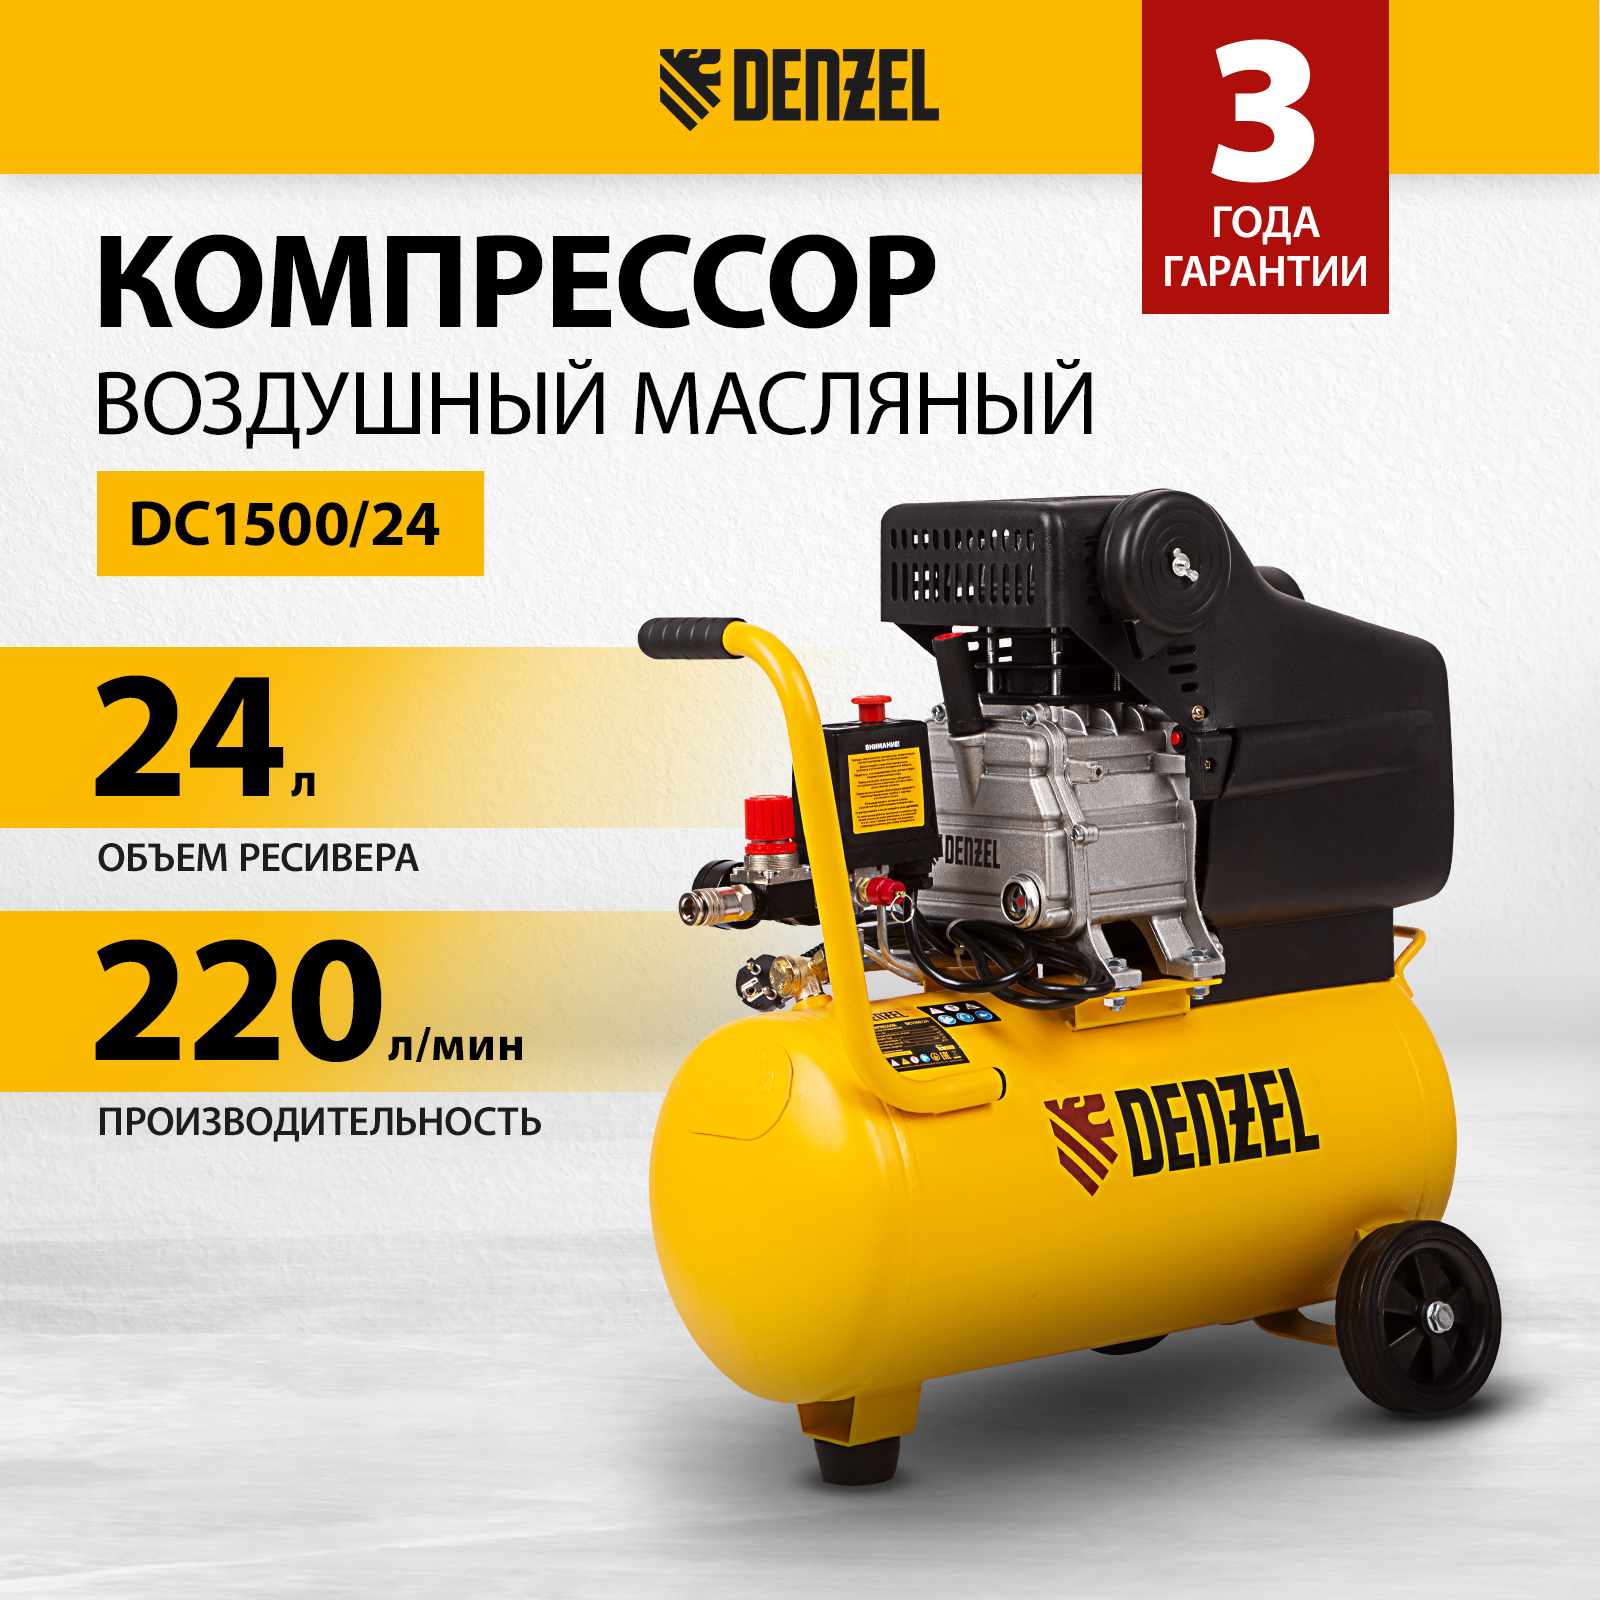 Компрессор воздушный DENZEL DC1500/24  58160 компрессор воздушный denzel dc1500 50 58161